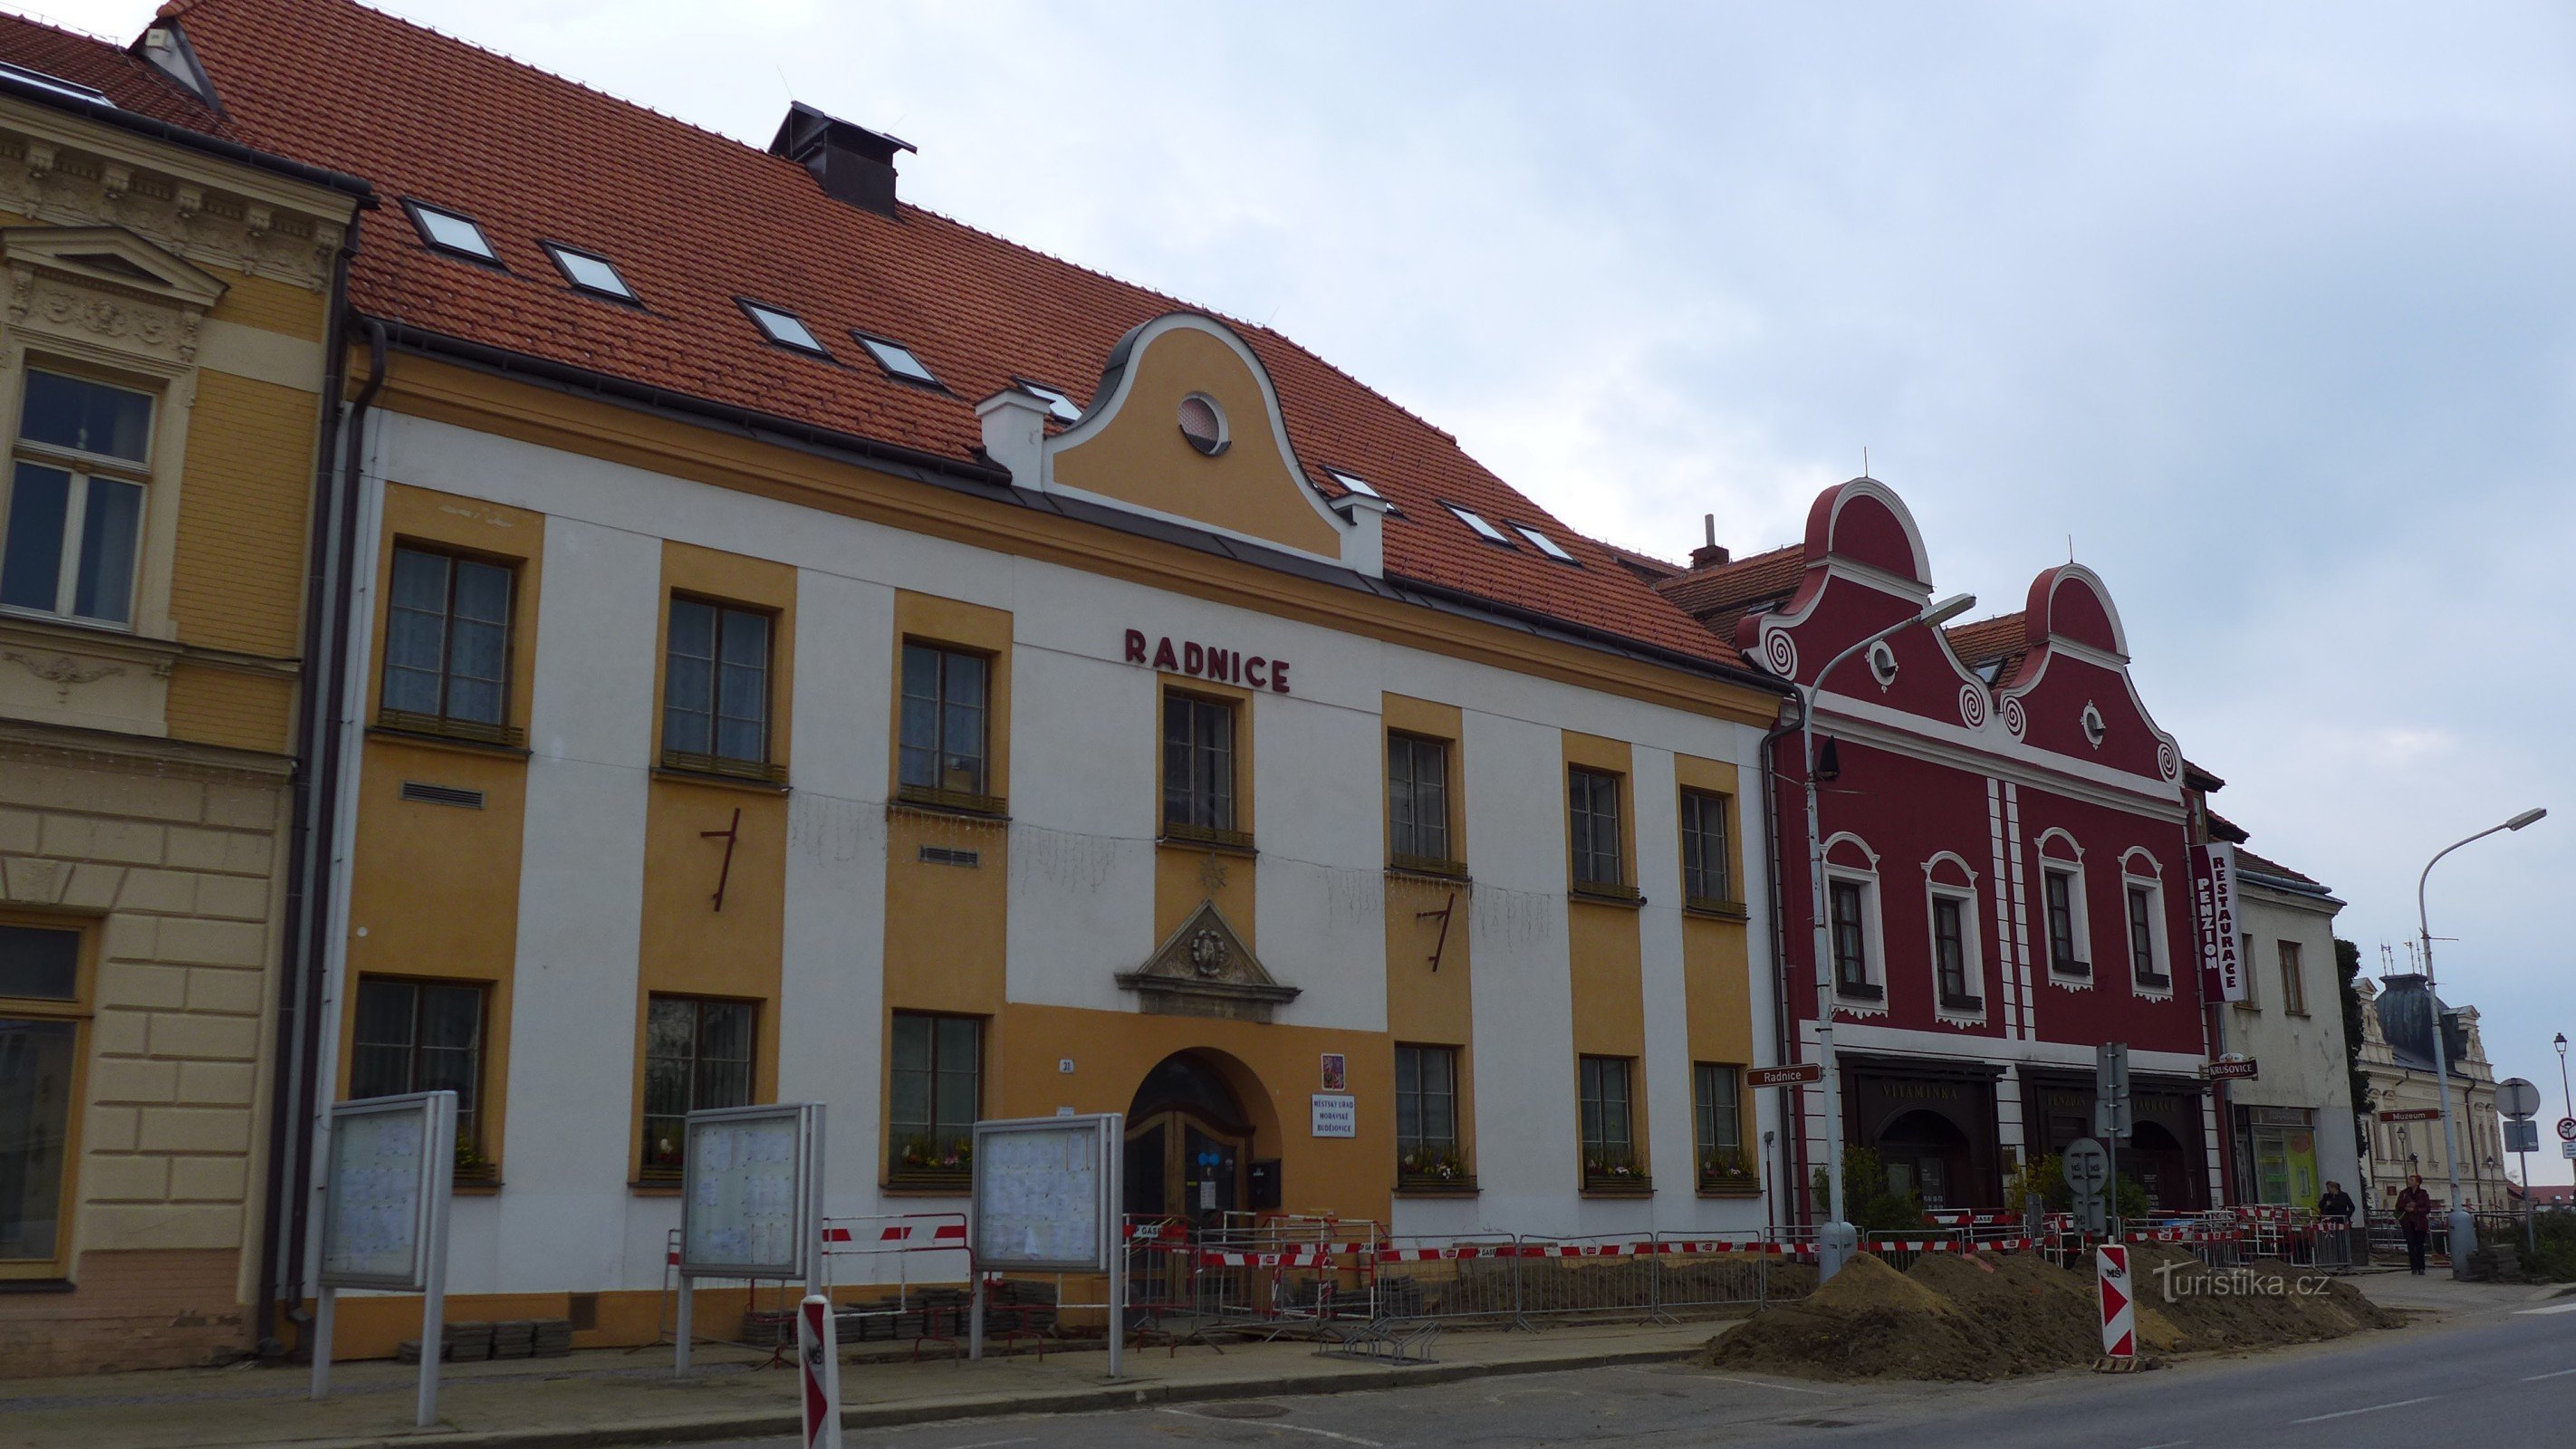 Moravské Budějovice - town hall